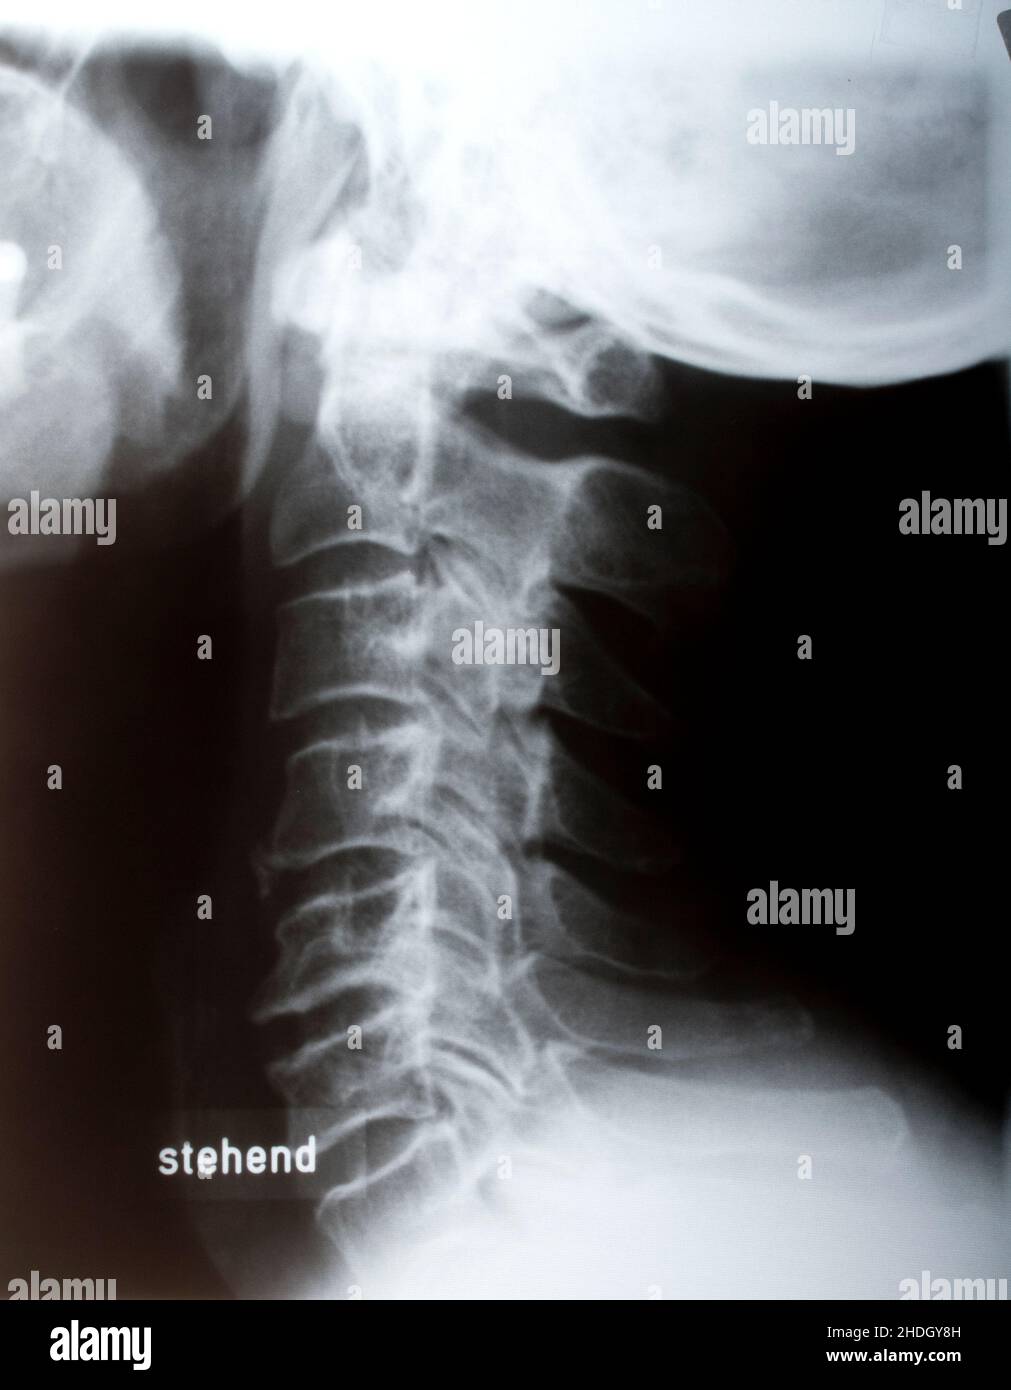 imagen de rayos x, lesión, columna vertebral humana, columna cervical, radiología, rayos x, rayos x, rayos x, lesiones, espinas humanas, espinas cervicales Foto de stock